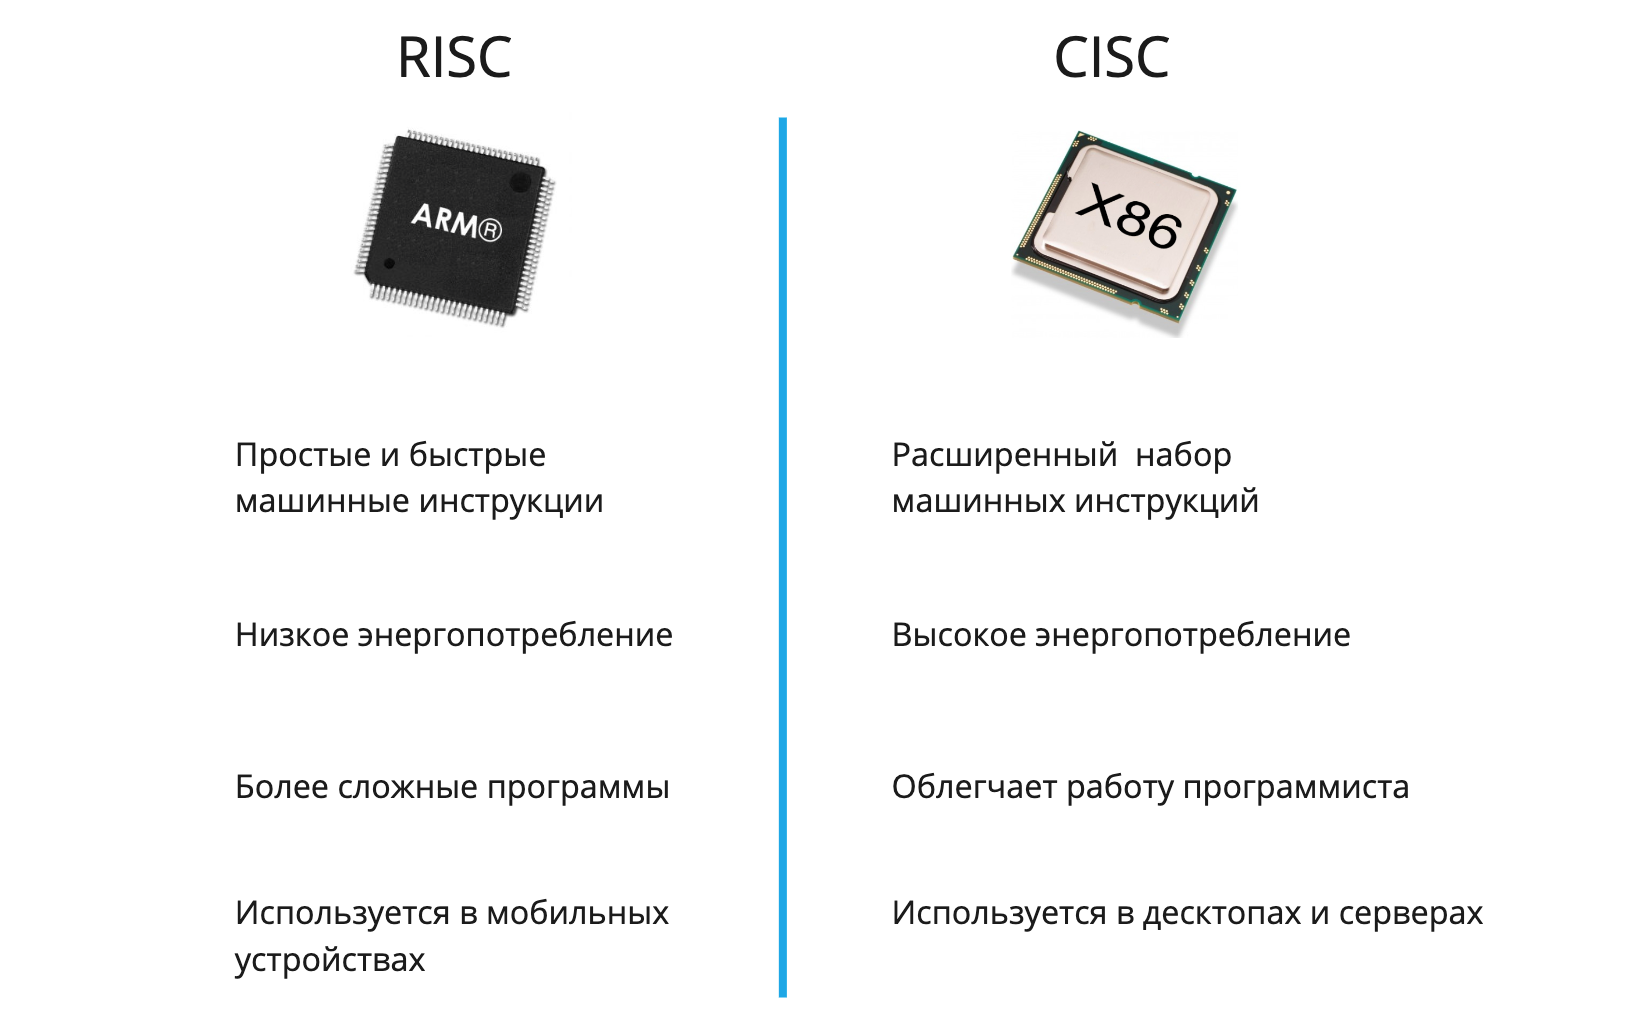 Arm 64 что это. Архитектура процессоров RISC И CISC. Архитектуры микропроцессоров CISC, RISC, misc. Архитектуры процессоров RISC CISC Arm. RISC CISC архитектура различия.